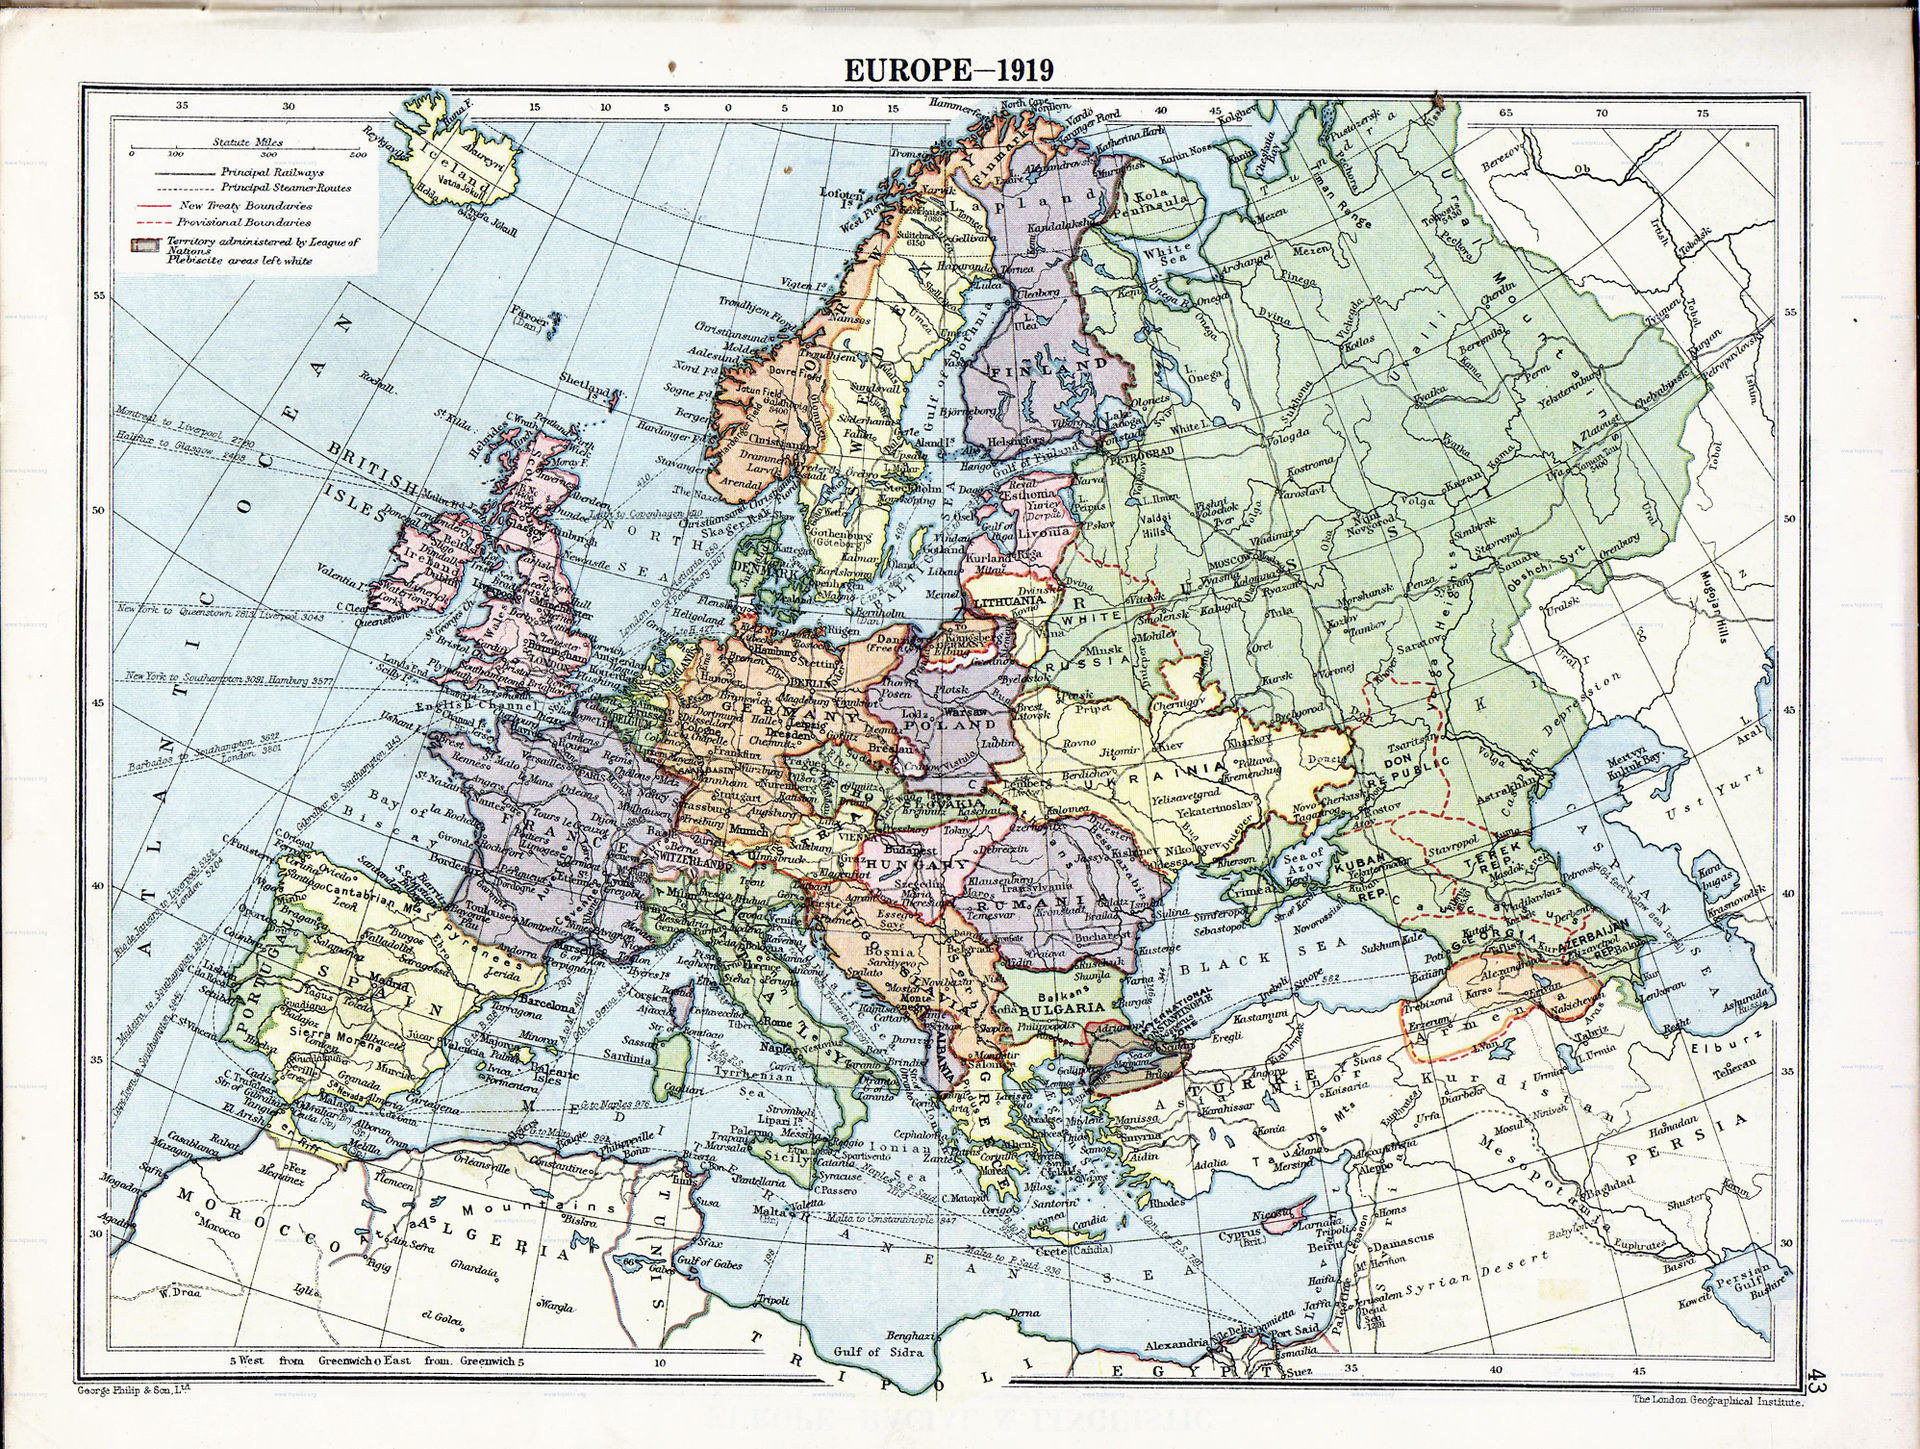 Украина на карте Европы 1919 года. Фото © Wikipedia